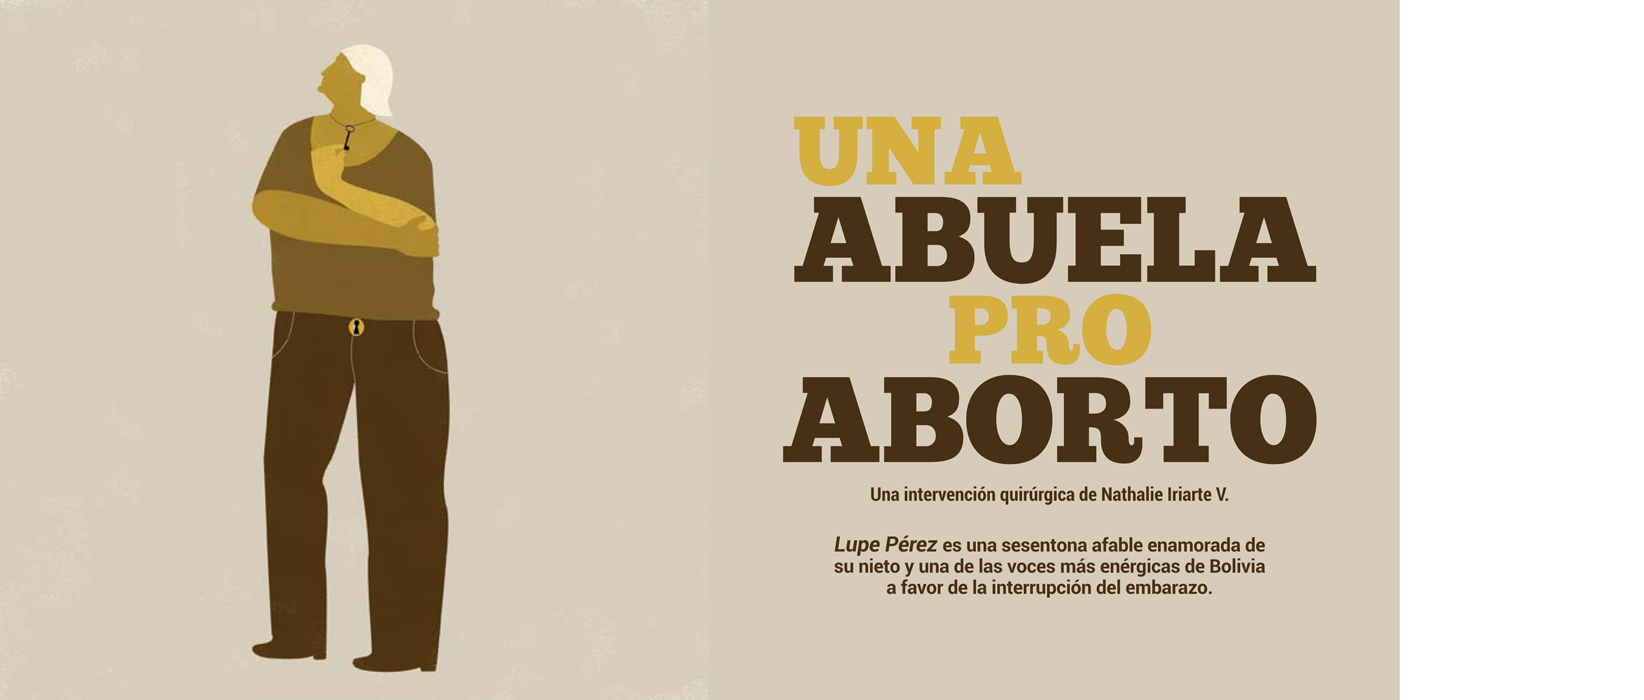 Abuela pro aborto PWEB.jpg